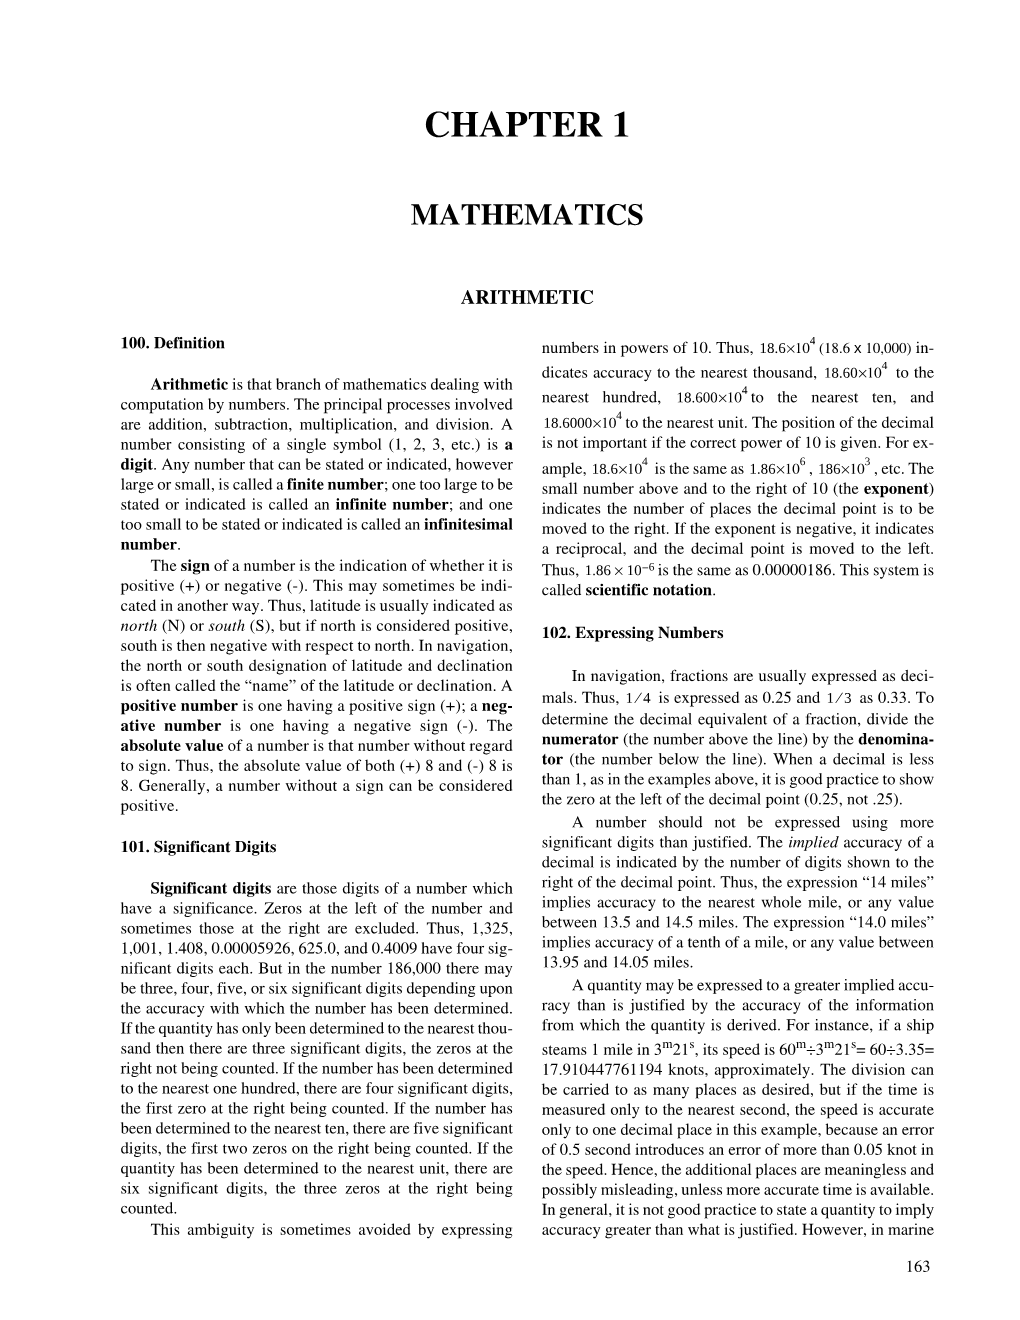 Chapter 1- Mathematics